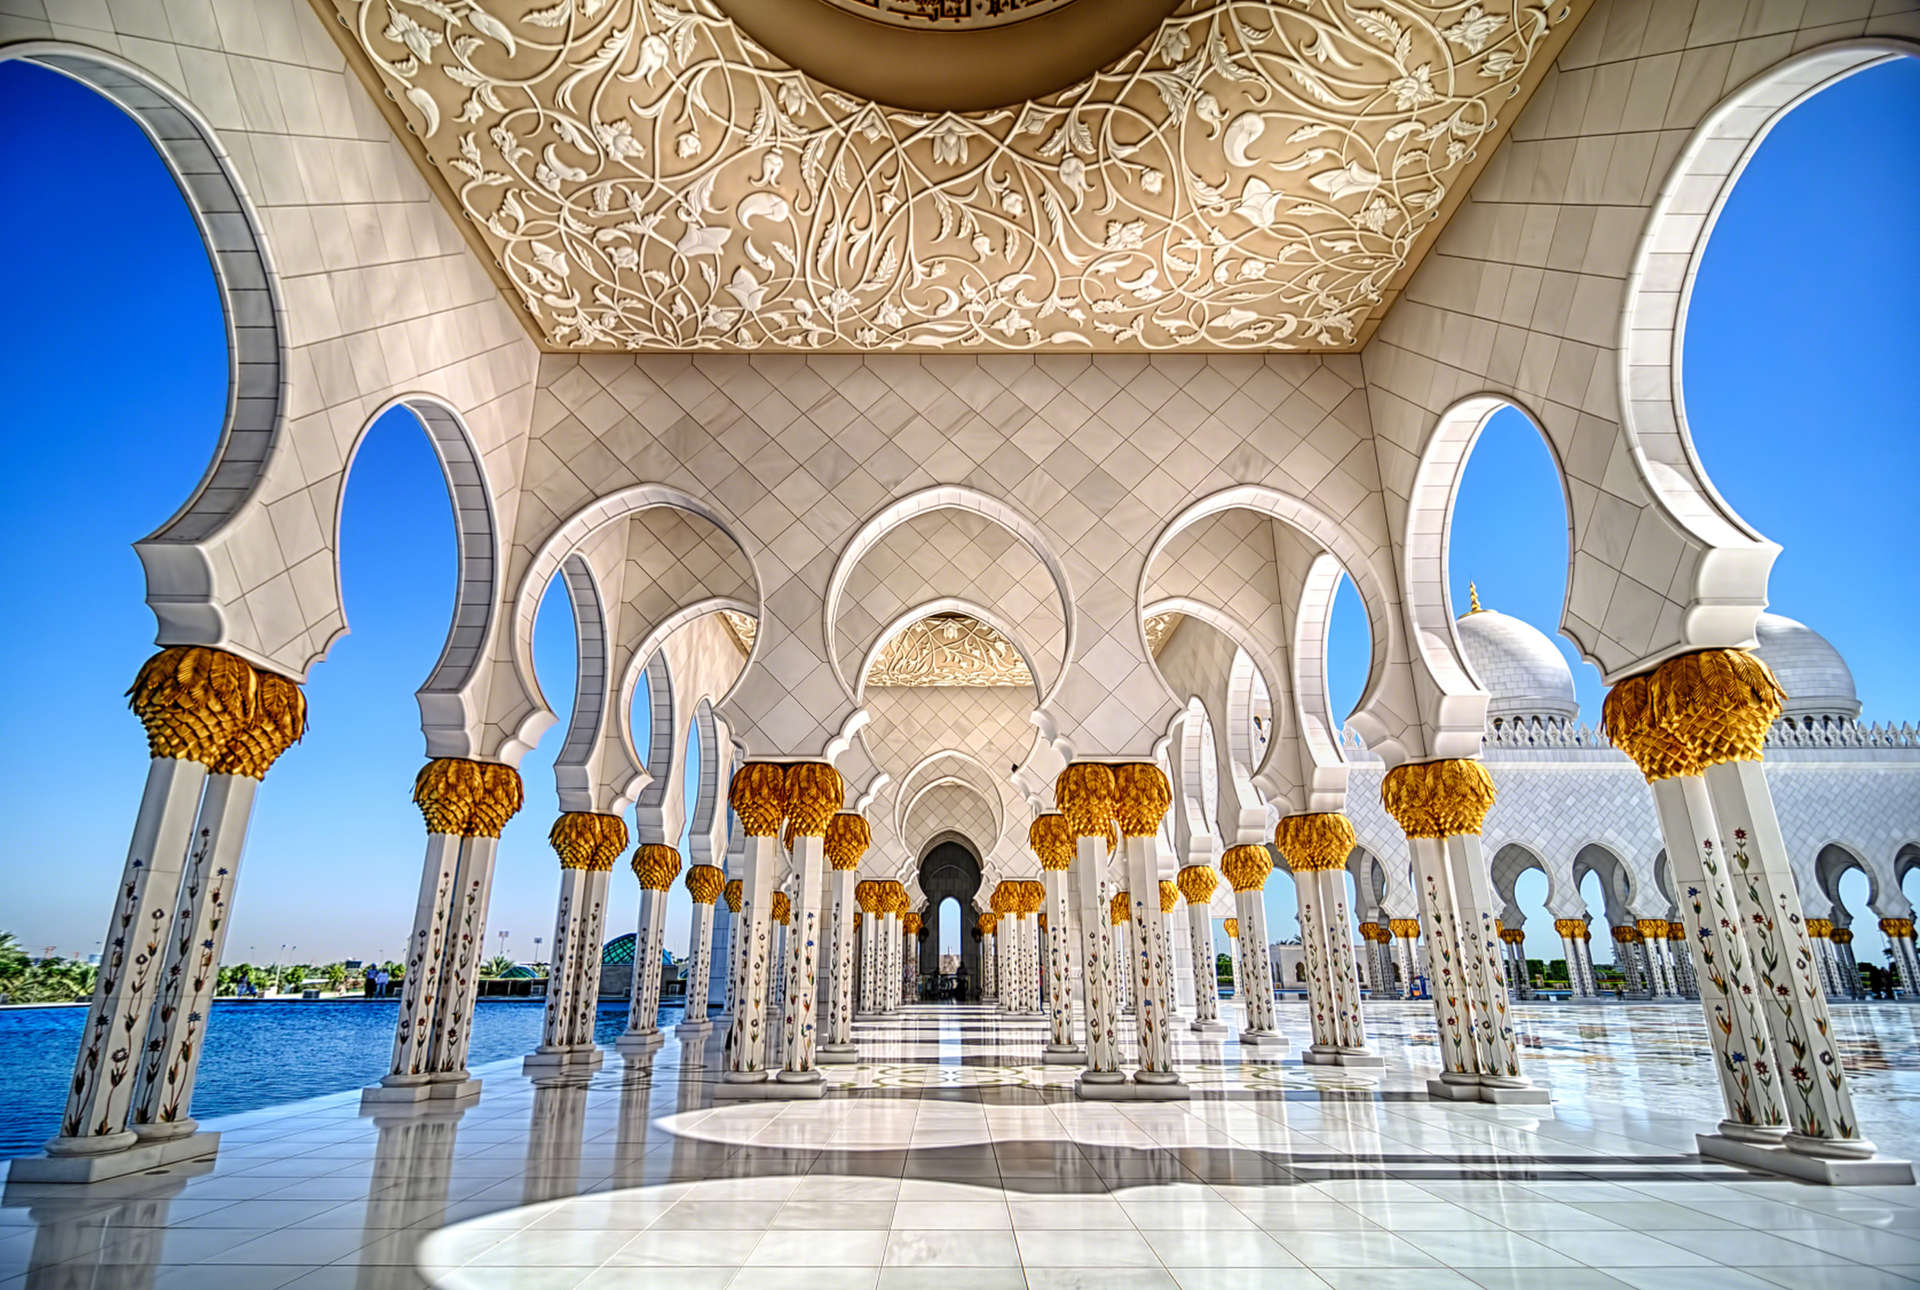 Novembre est une période agréable pour explorer les richesses culturelles et naturelles d'Abu Dhabi